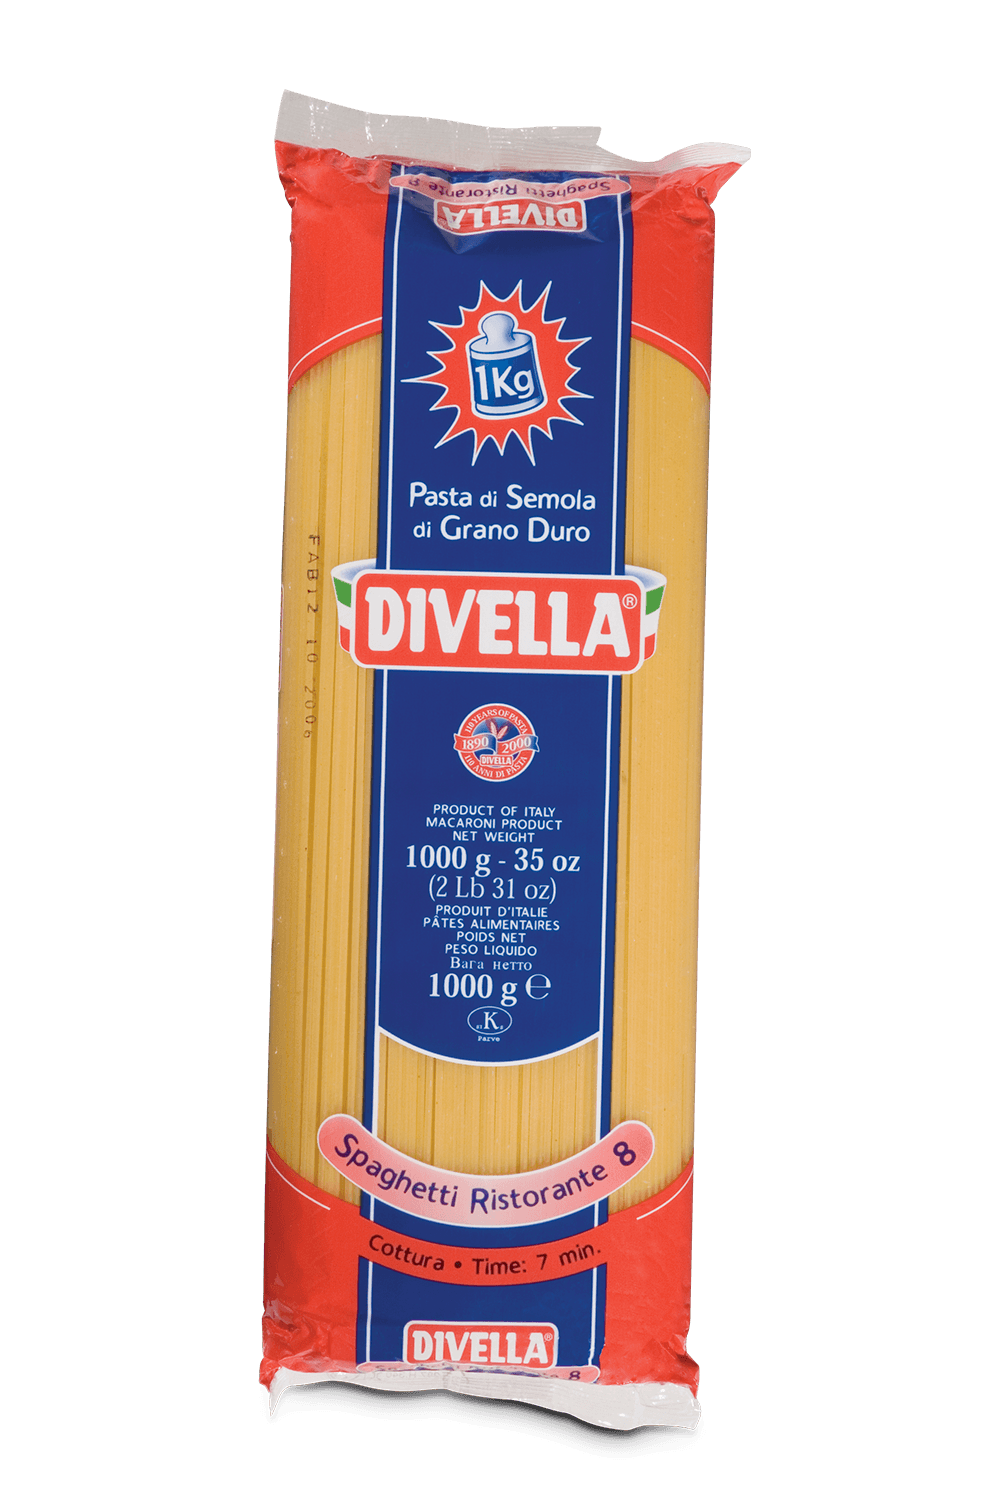 8306-Massa-Italiana-Divella-nº08-Spaghetti-Ristoranti-1kg